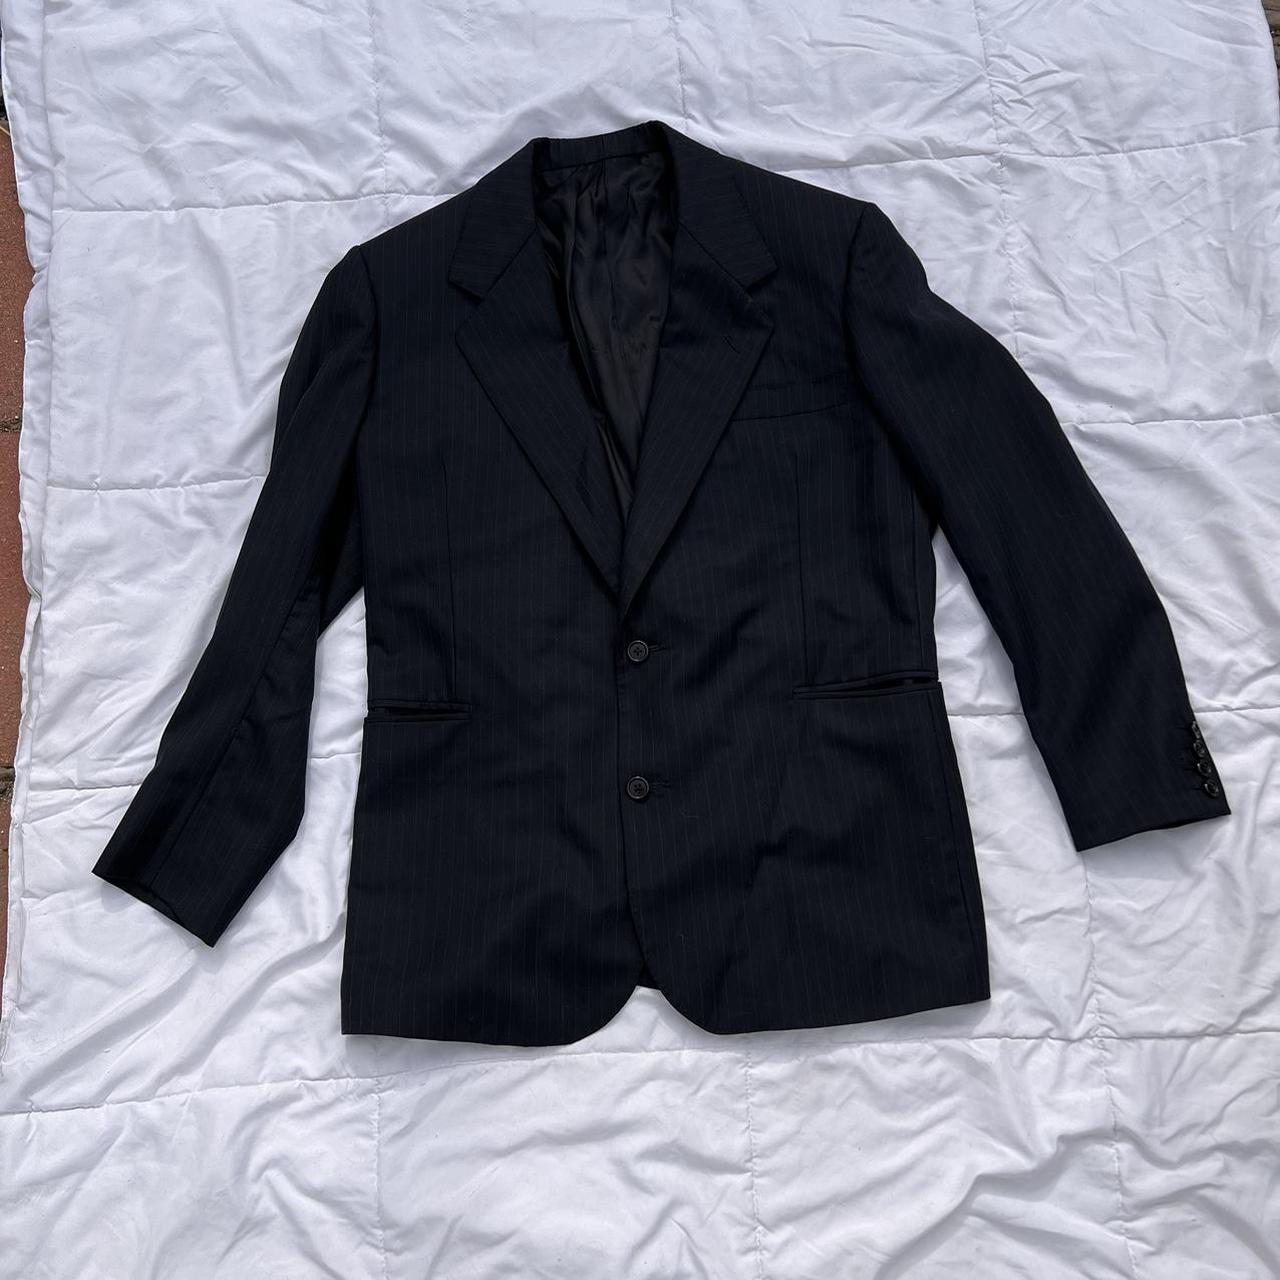 Bateman Ogden Custom Tailored Suit Jacket Imported... - Depop